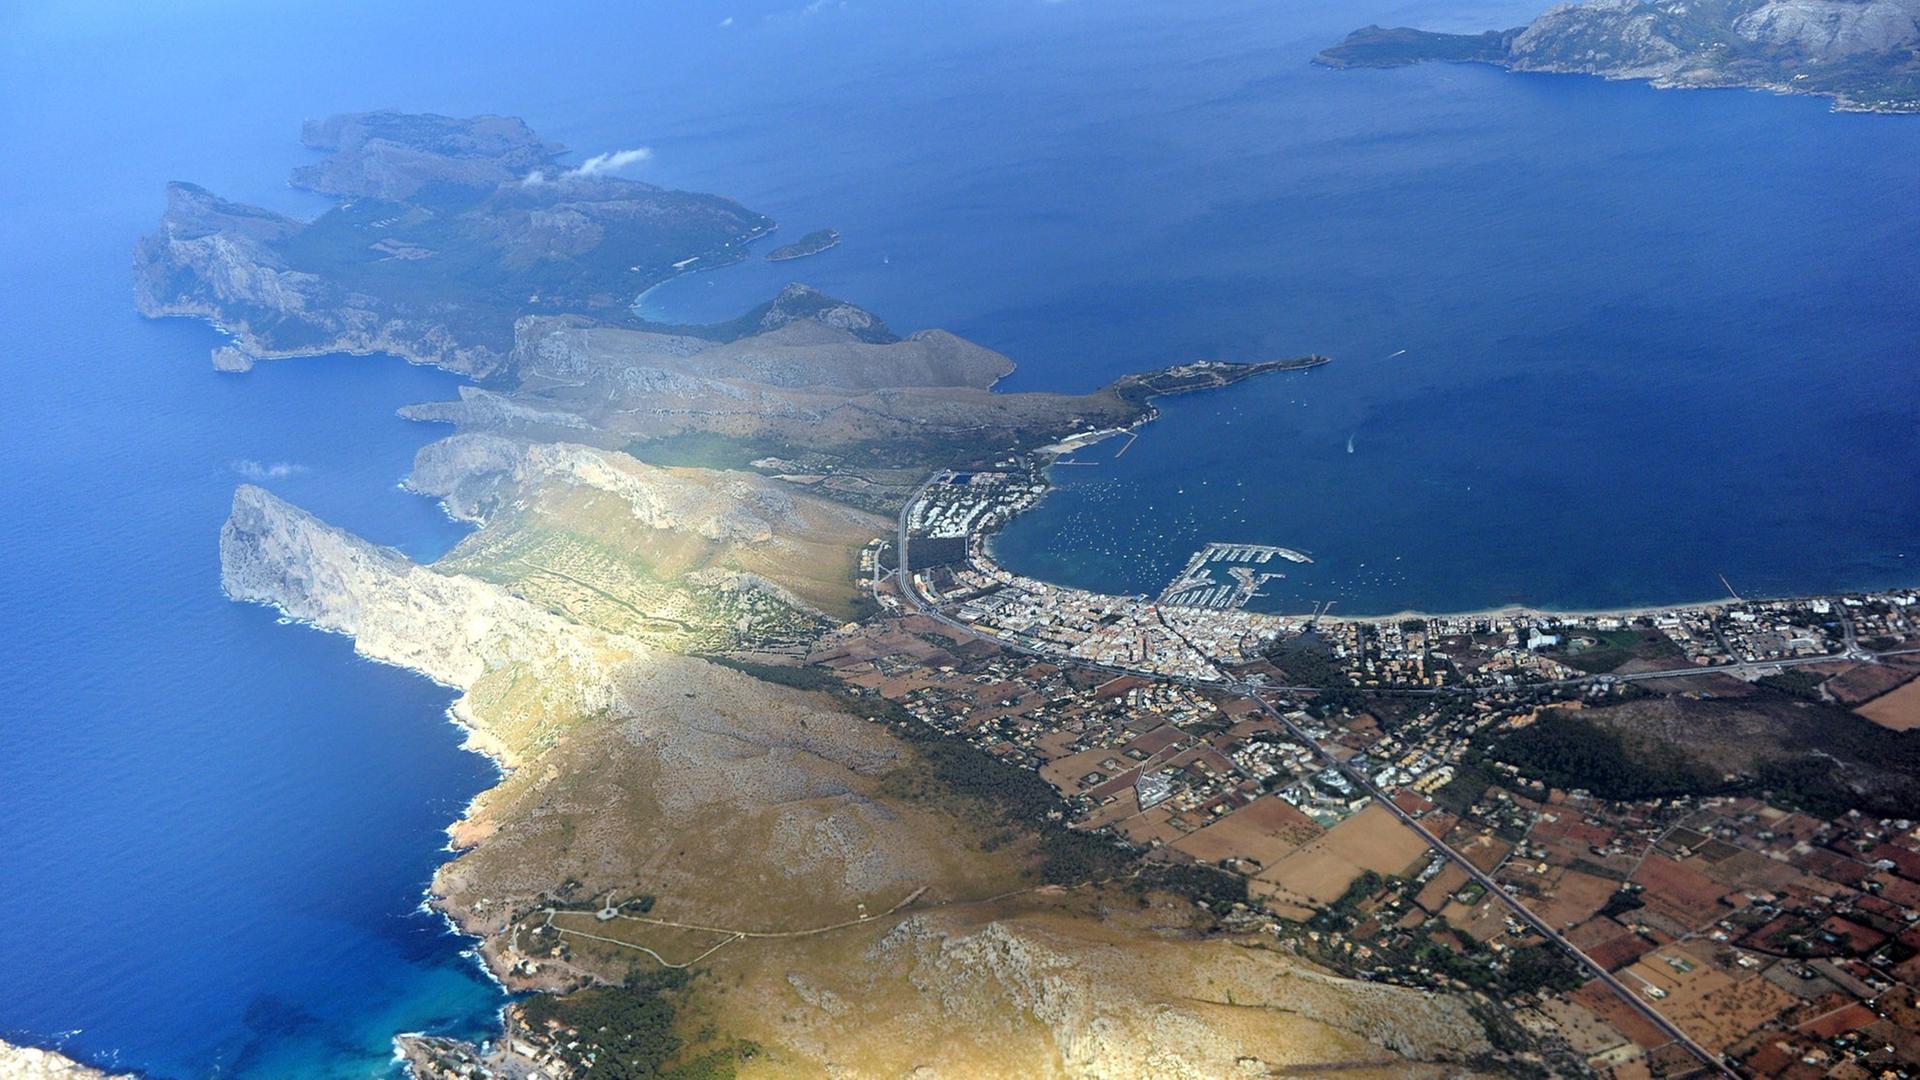 Die Luftaufnahme vom 03.09.2012 zeigt den Ort Port de Pollenca an der Nordspitze der Spanischen Insel Mallorca im Mittelmeer. Unten links ist der Ort Cala de Sant Vicenc zu sehen.